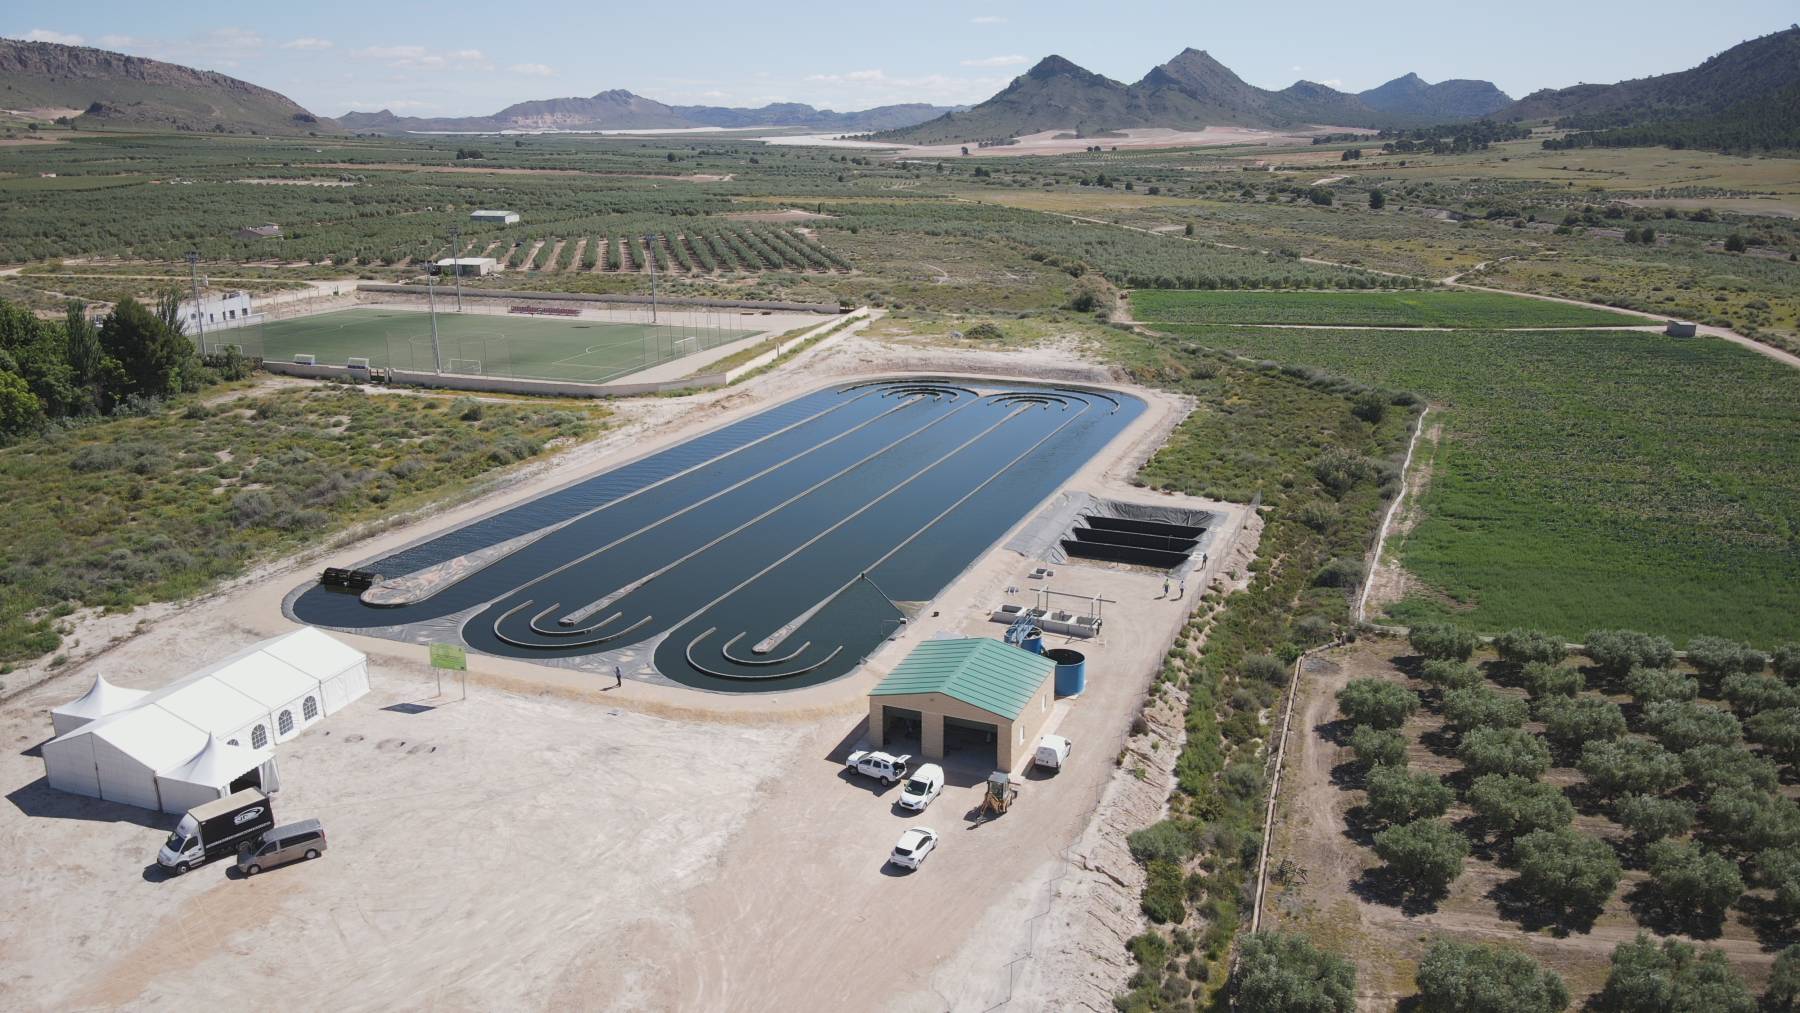 Vista aérea de la EDAR de Agramón (Albacete), que incorpora tecnologías innovadoras para conseguir un tratamiento de aguas residuales pionero y sostenible